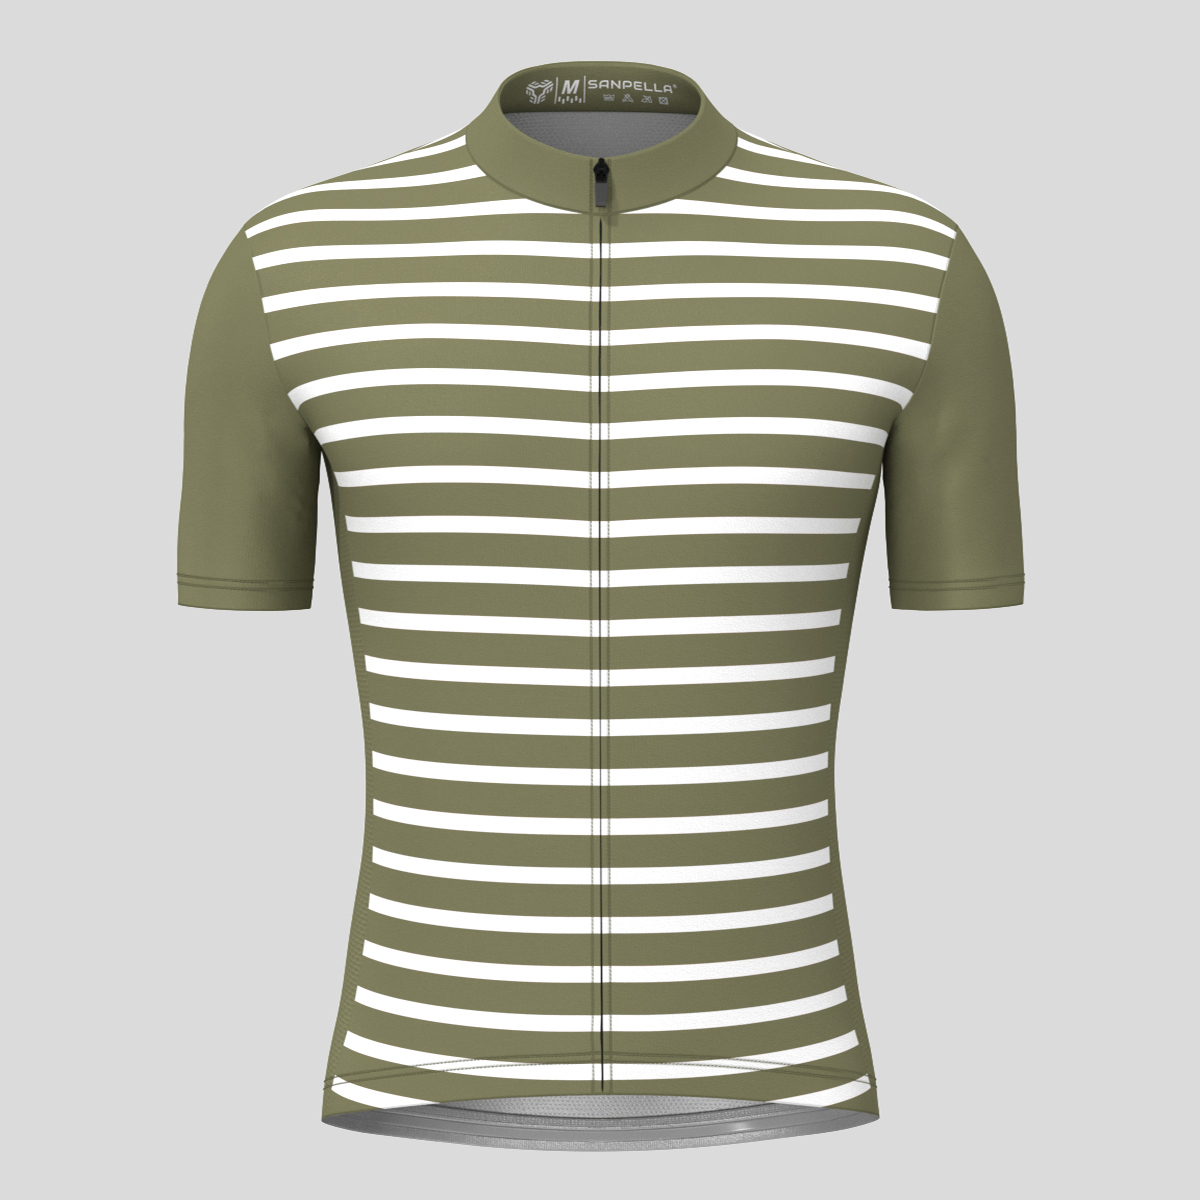 Minimal Stripes Men's Cycling Jersey - Olive